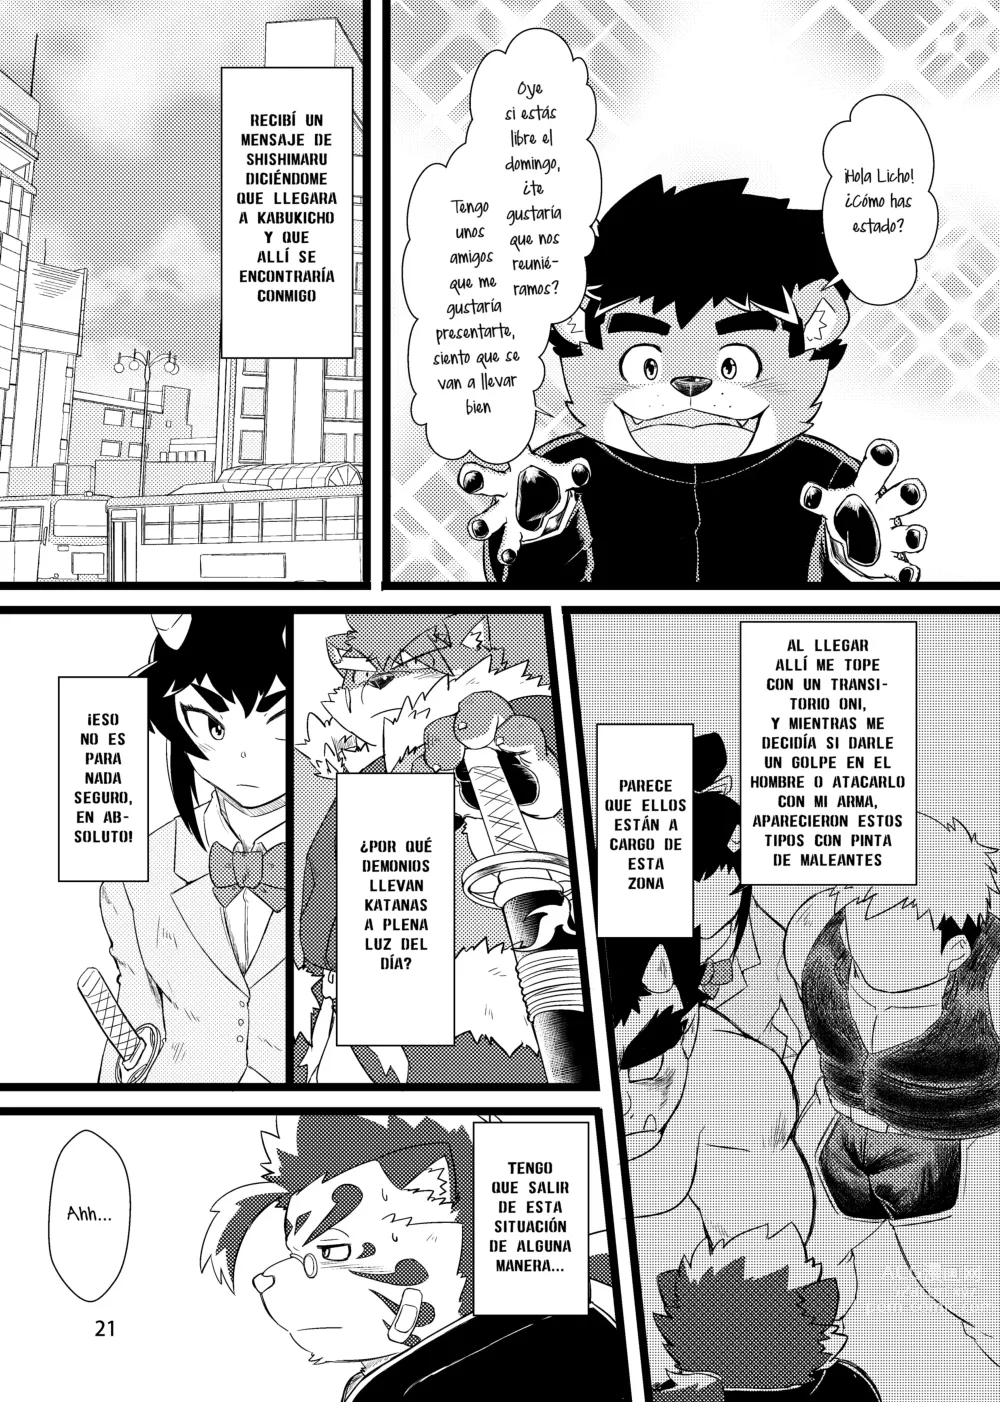 Page 24 of doujinshi ¿No es ese mi amigo Licho?